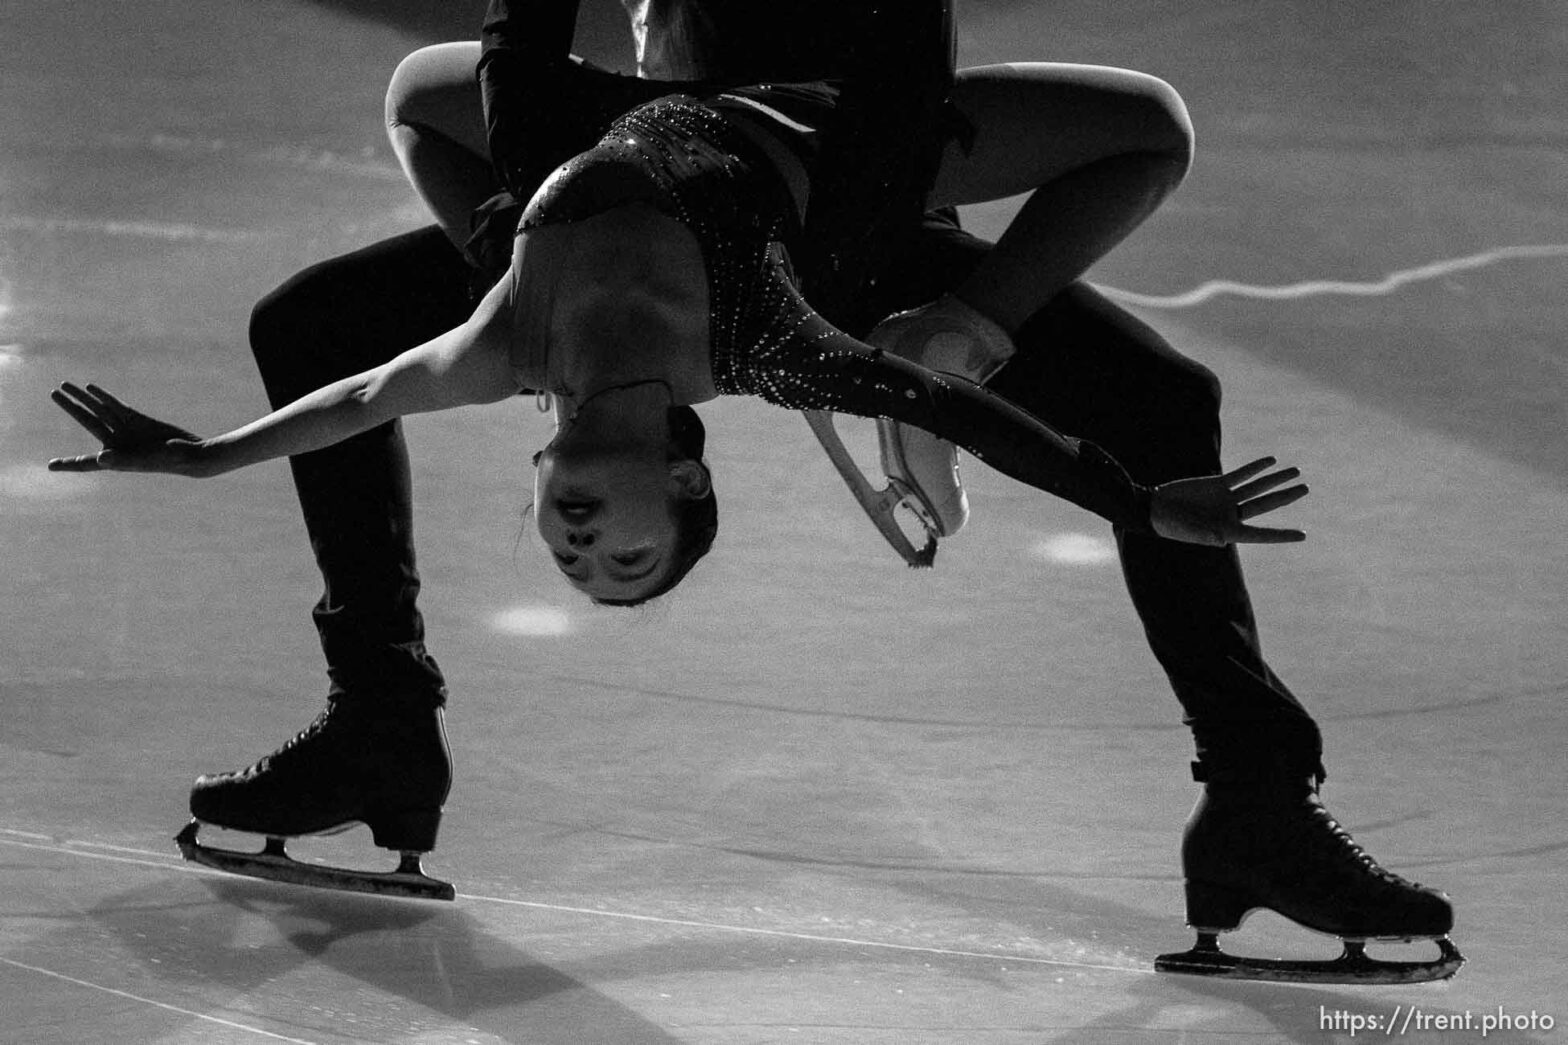 Beijing 2022 – Figure Skating exposition